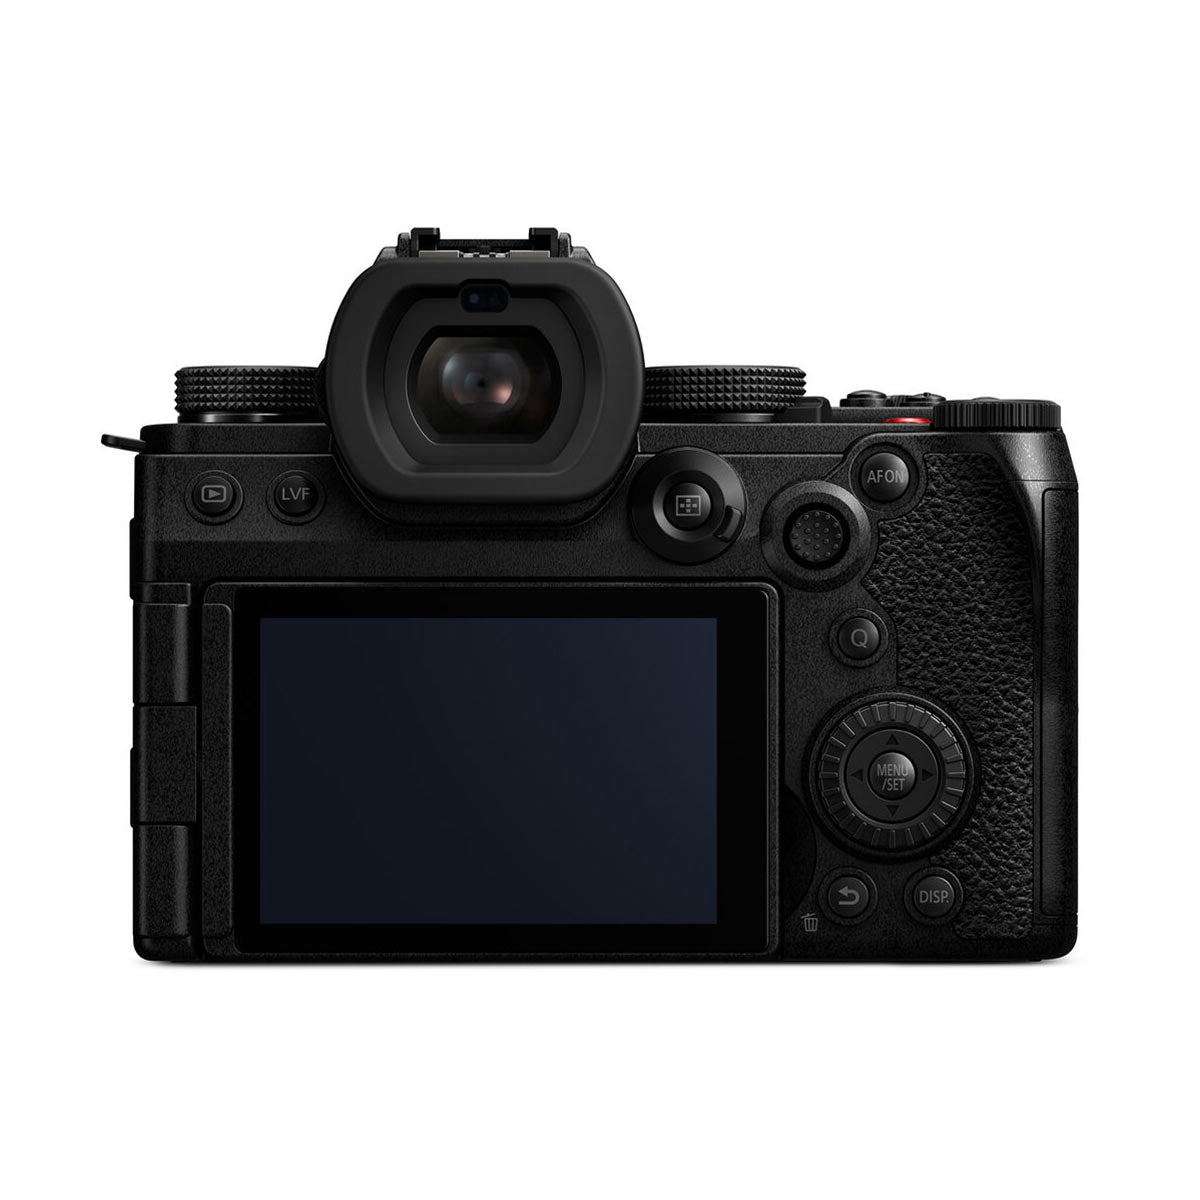 Panasonic Lumix S5 IIX Mirrorless Camera with 20-60mm f/3.5-5.6 Lens